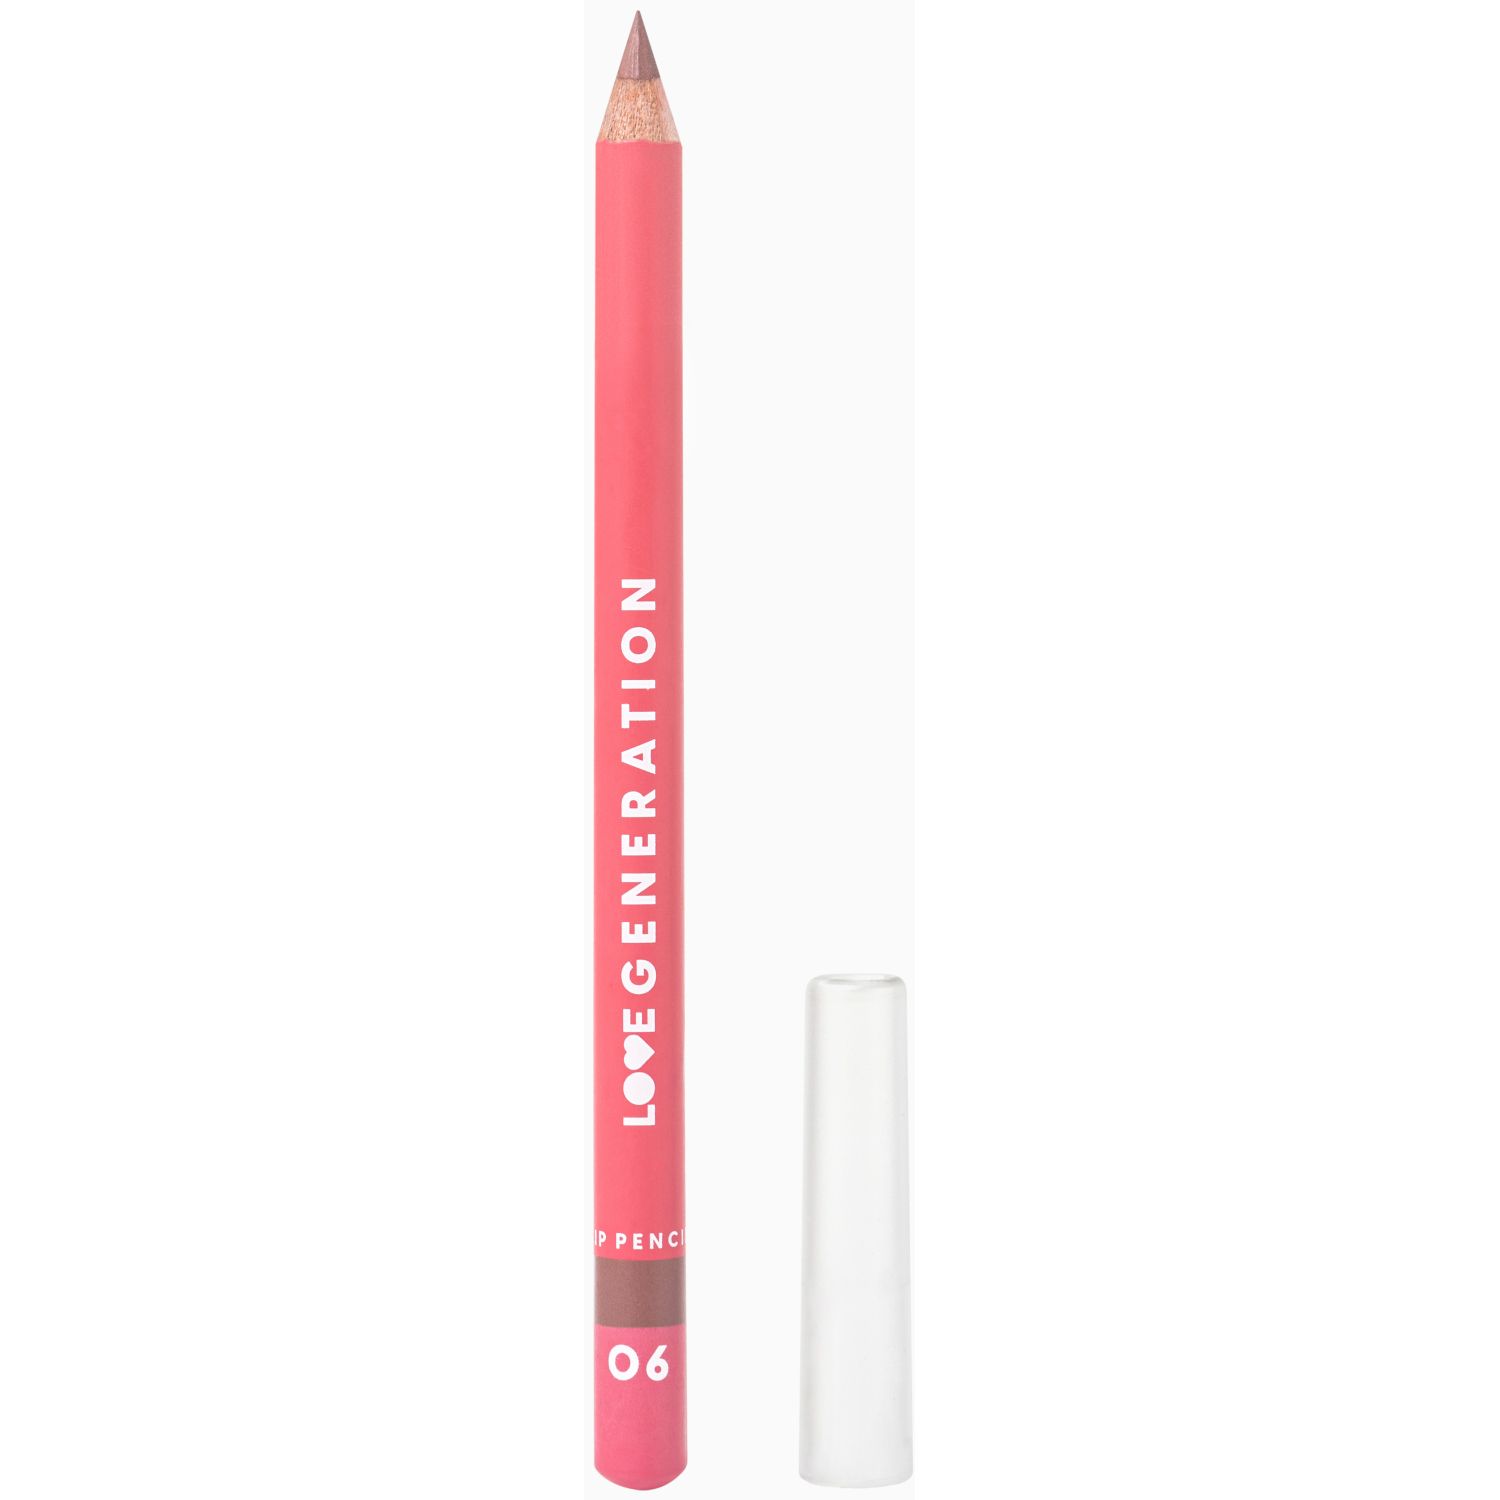 Карандаш для губ LOVE GENERATION Lip Pencil контурный, №06 теплый коричневый, 1,2 г